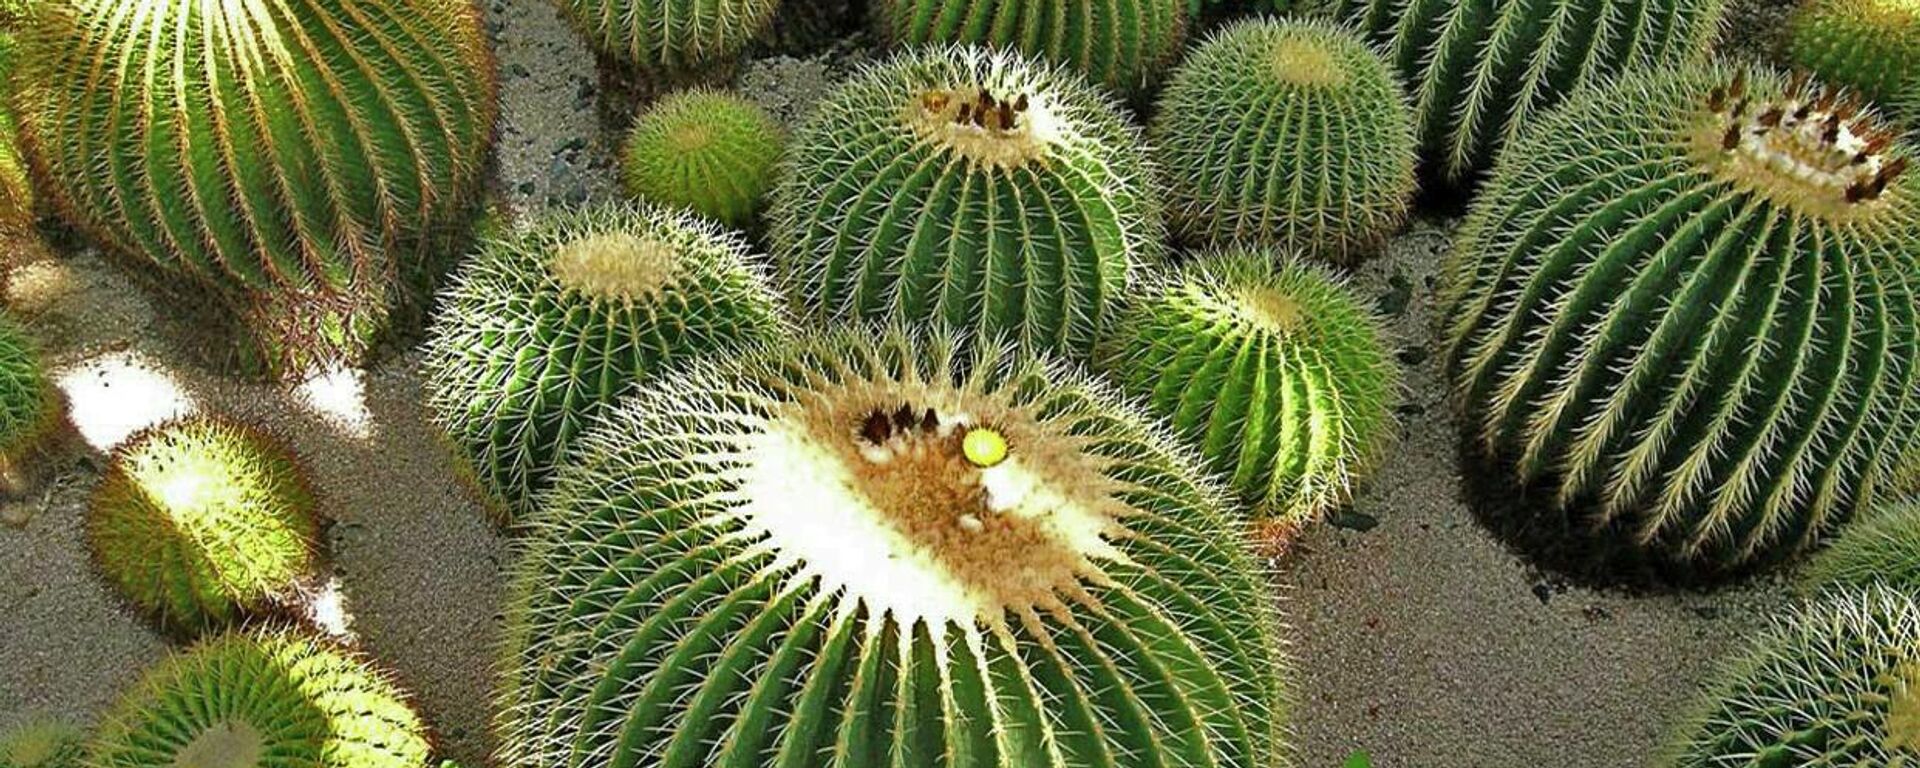 Las biznagas con cactus originarios de México en peligro de extinción.  - Sputnik Mundo, 1920, 05.01.2022